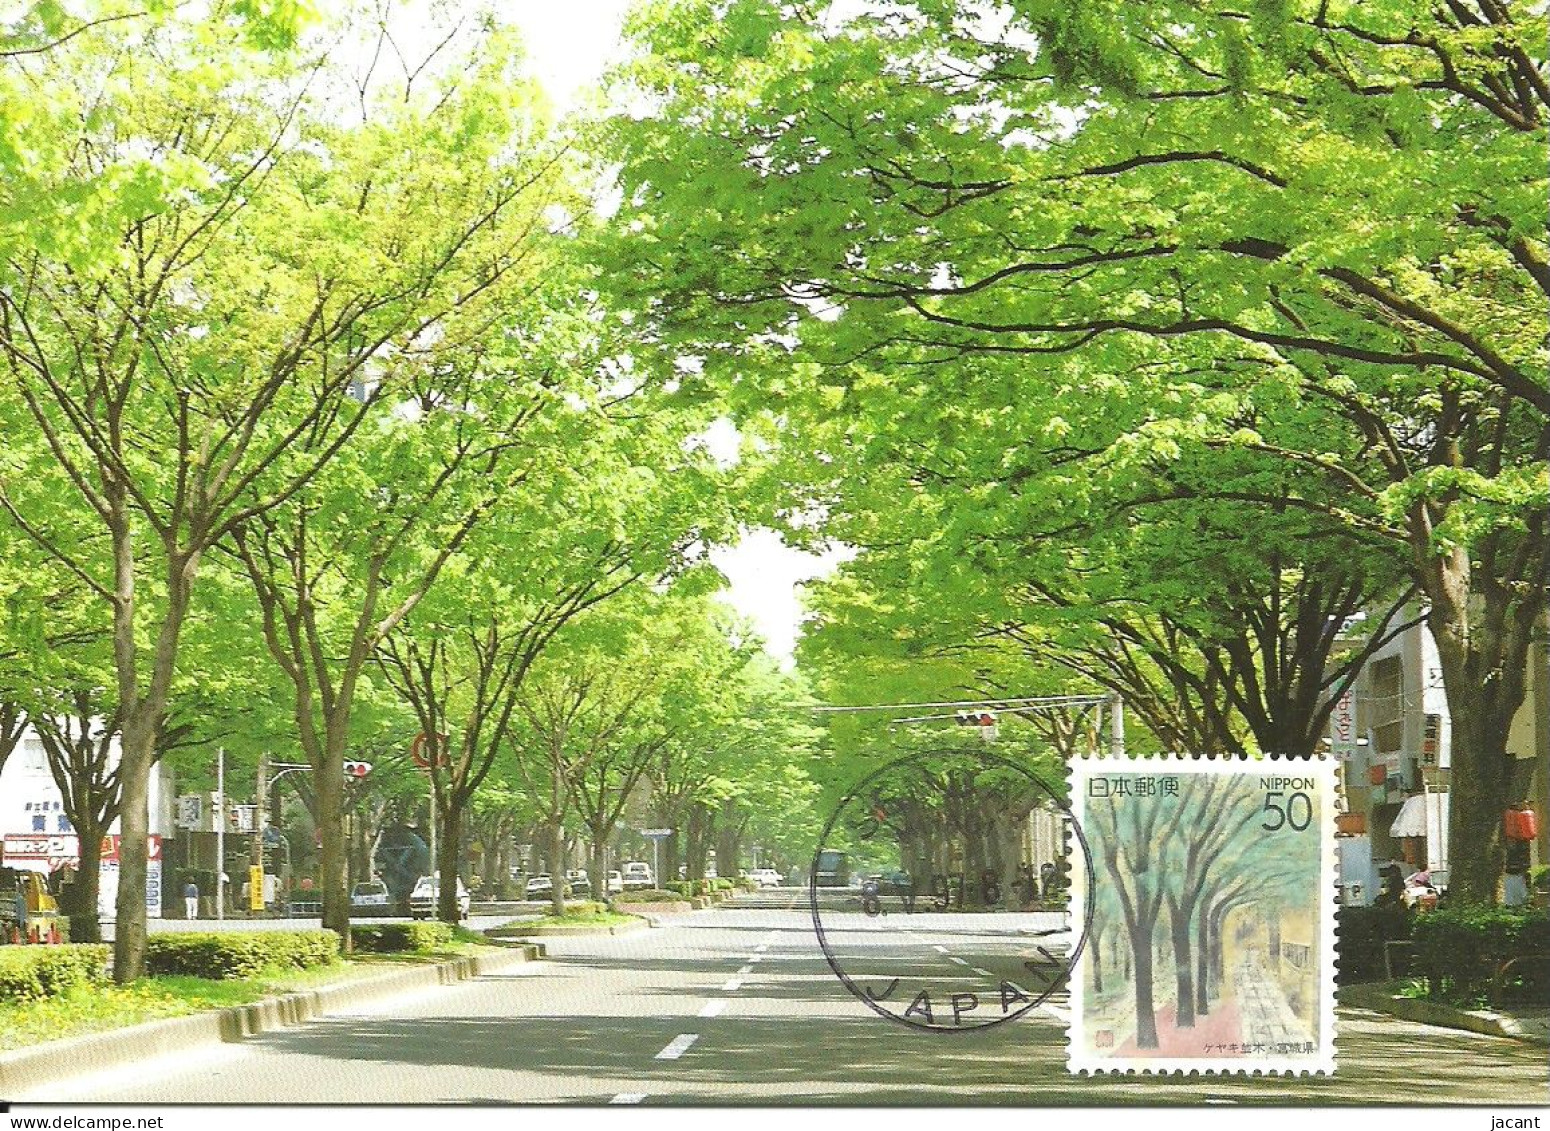 Carte Maximum - Japan - Arbres - Trees In Street - Sendai - Maximum Cards